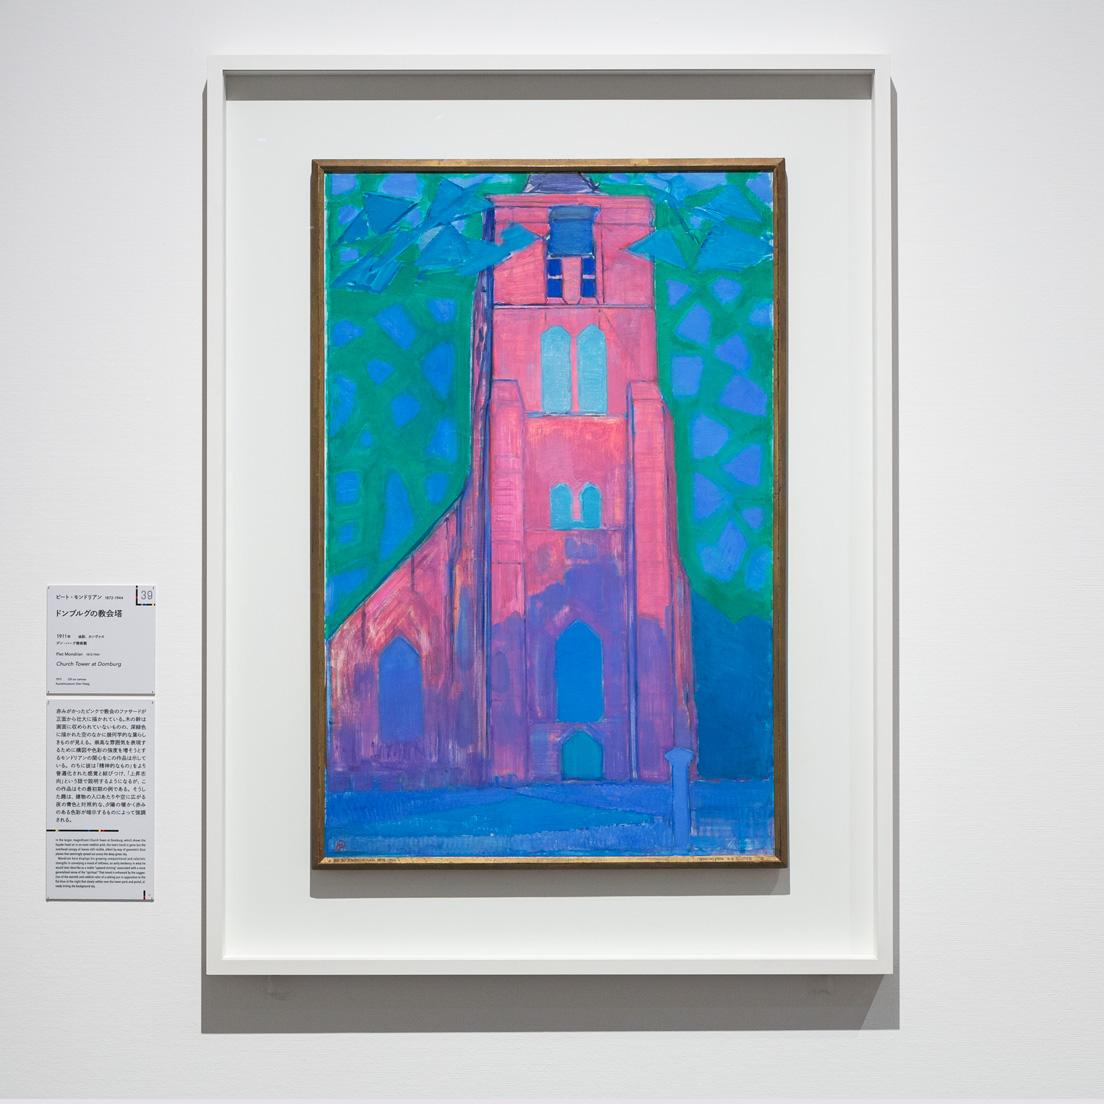 モンドリアン《ドンブルグの教会塔》（1911年）。同じ教会を点描で描いた別の作品も展示されている。デン・ハーグ美術館蔵。